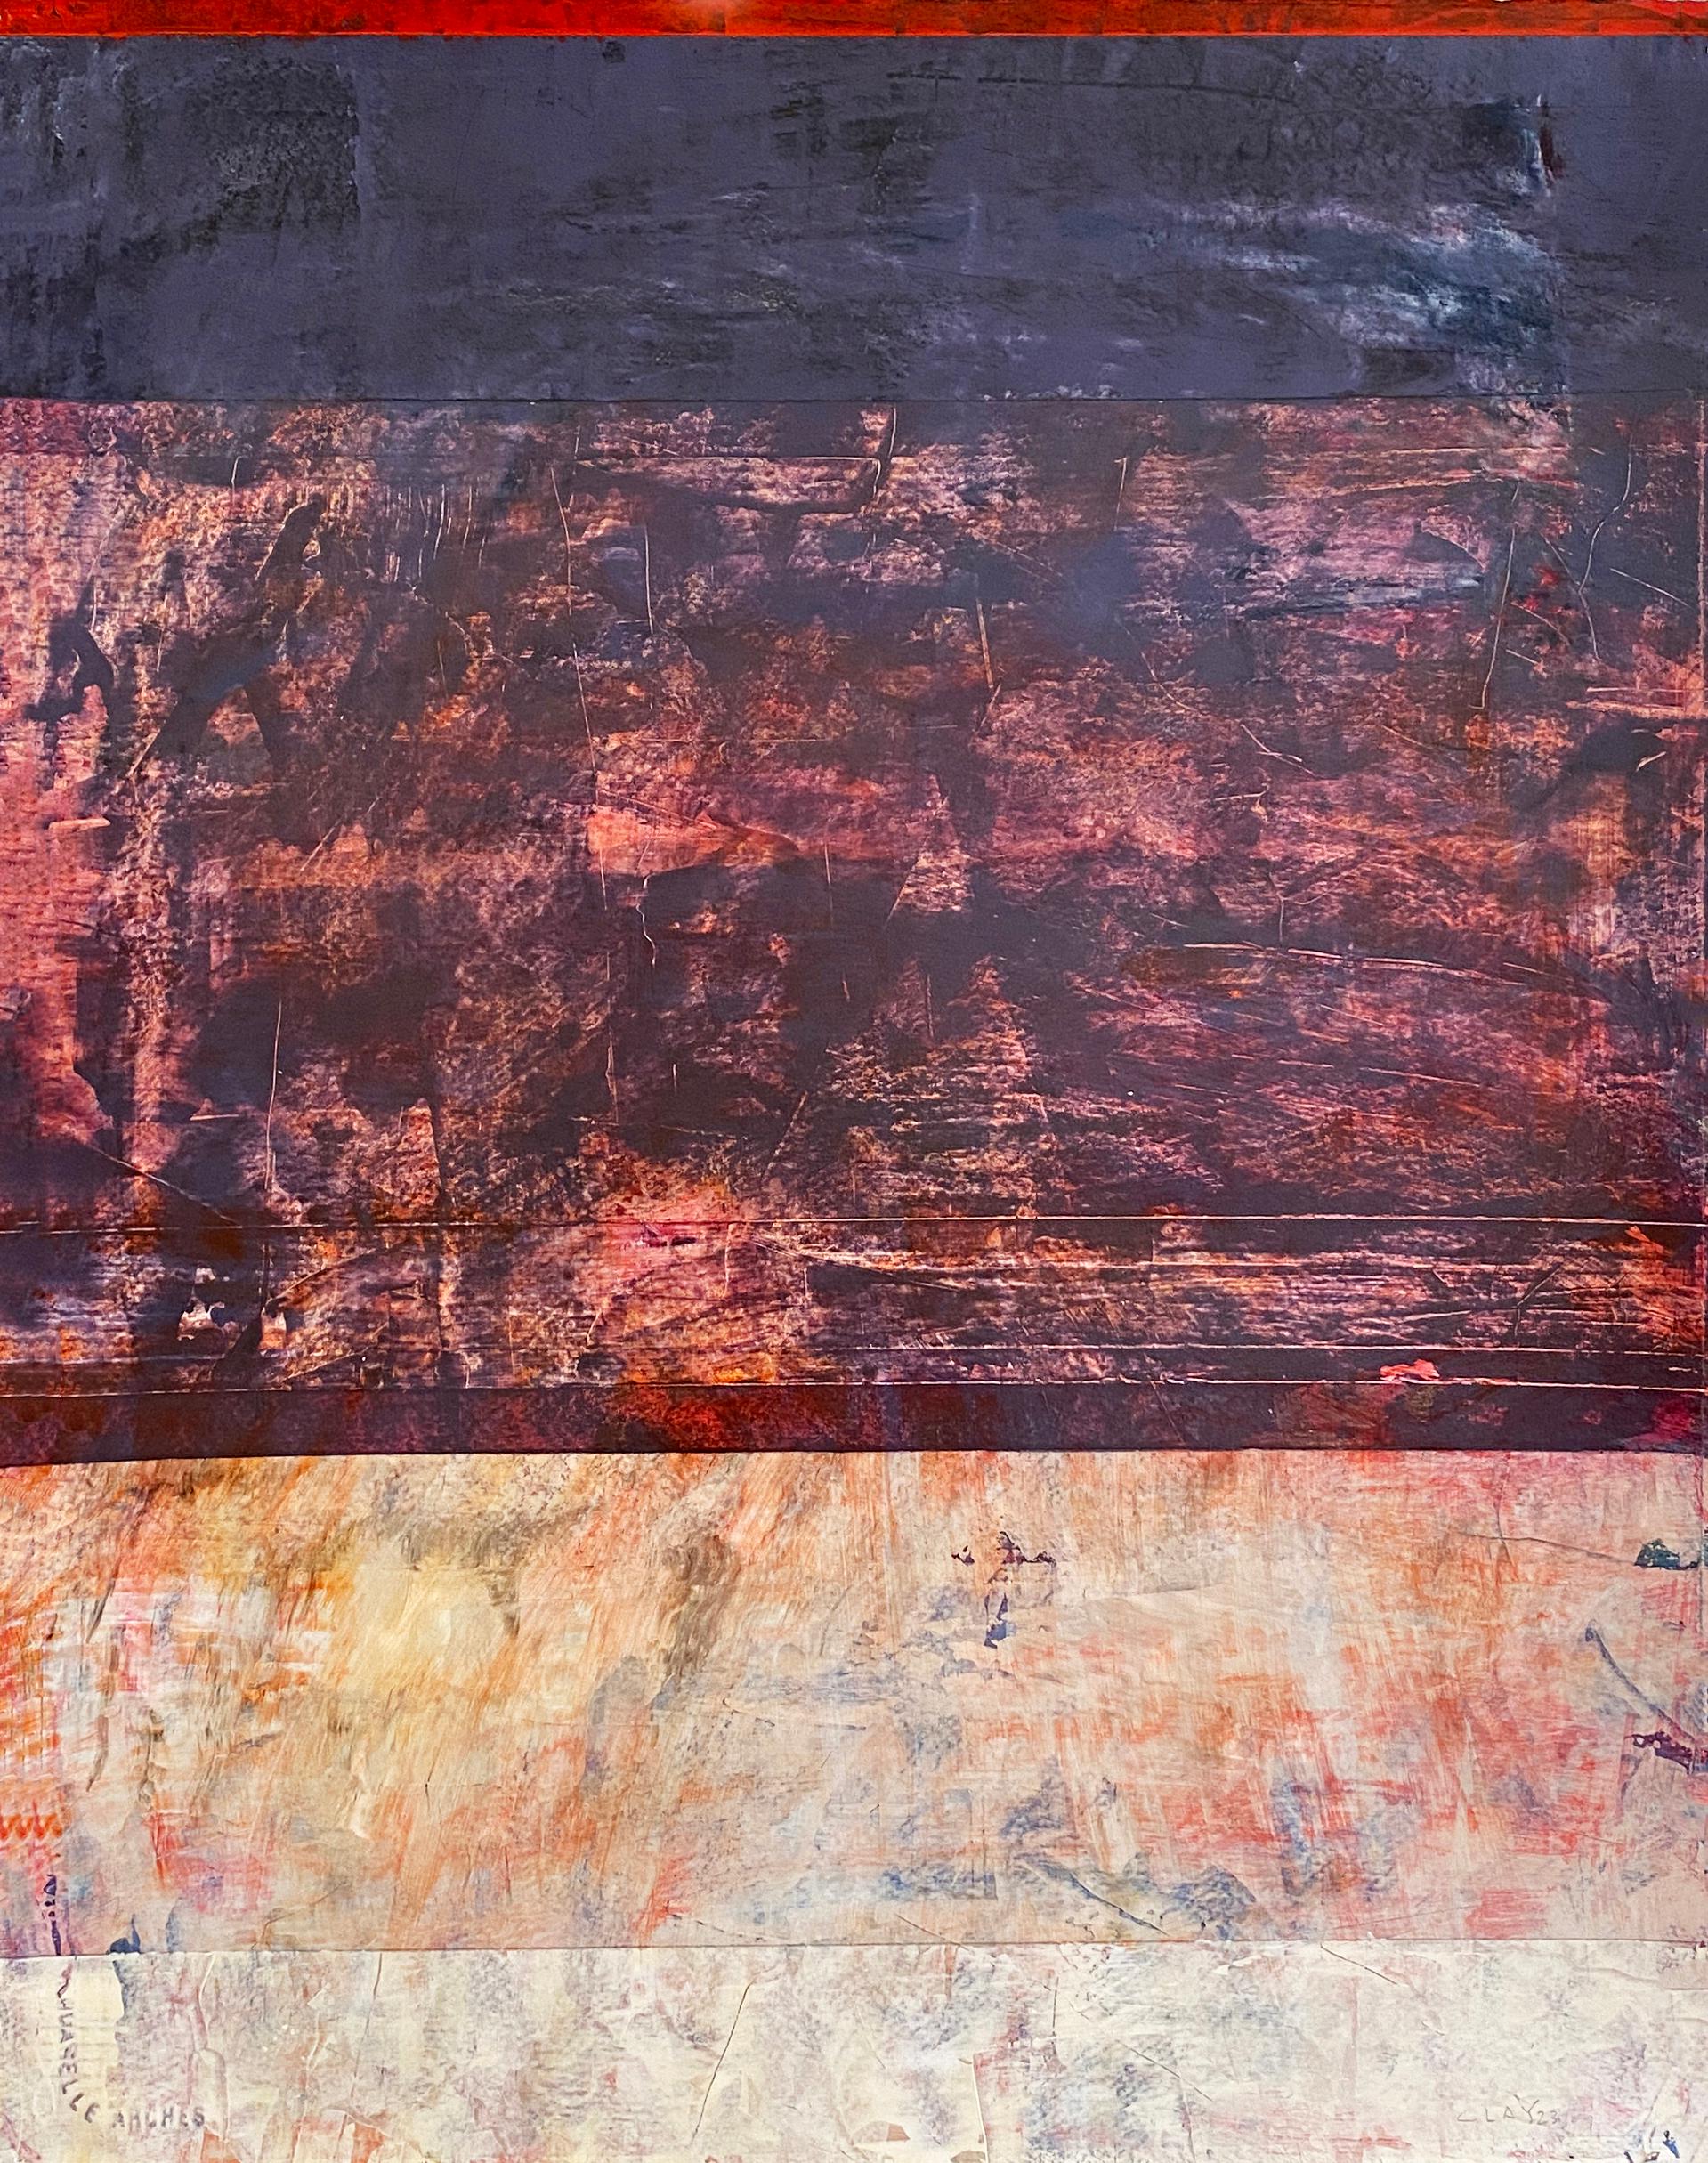 Untitled (#727)" 2023 von dem amerikanischen Künstler Clay Johnson. Acryl auf Arches-Papier, 20 x 16 Zoll. Dieses farbenfrohe abstrakte Gemälde zeigt Farbbänder in Rot, Blau, Beige, Orange, Rosa und Schwarz. 

Clay Johnsons Arbeit ist eher